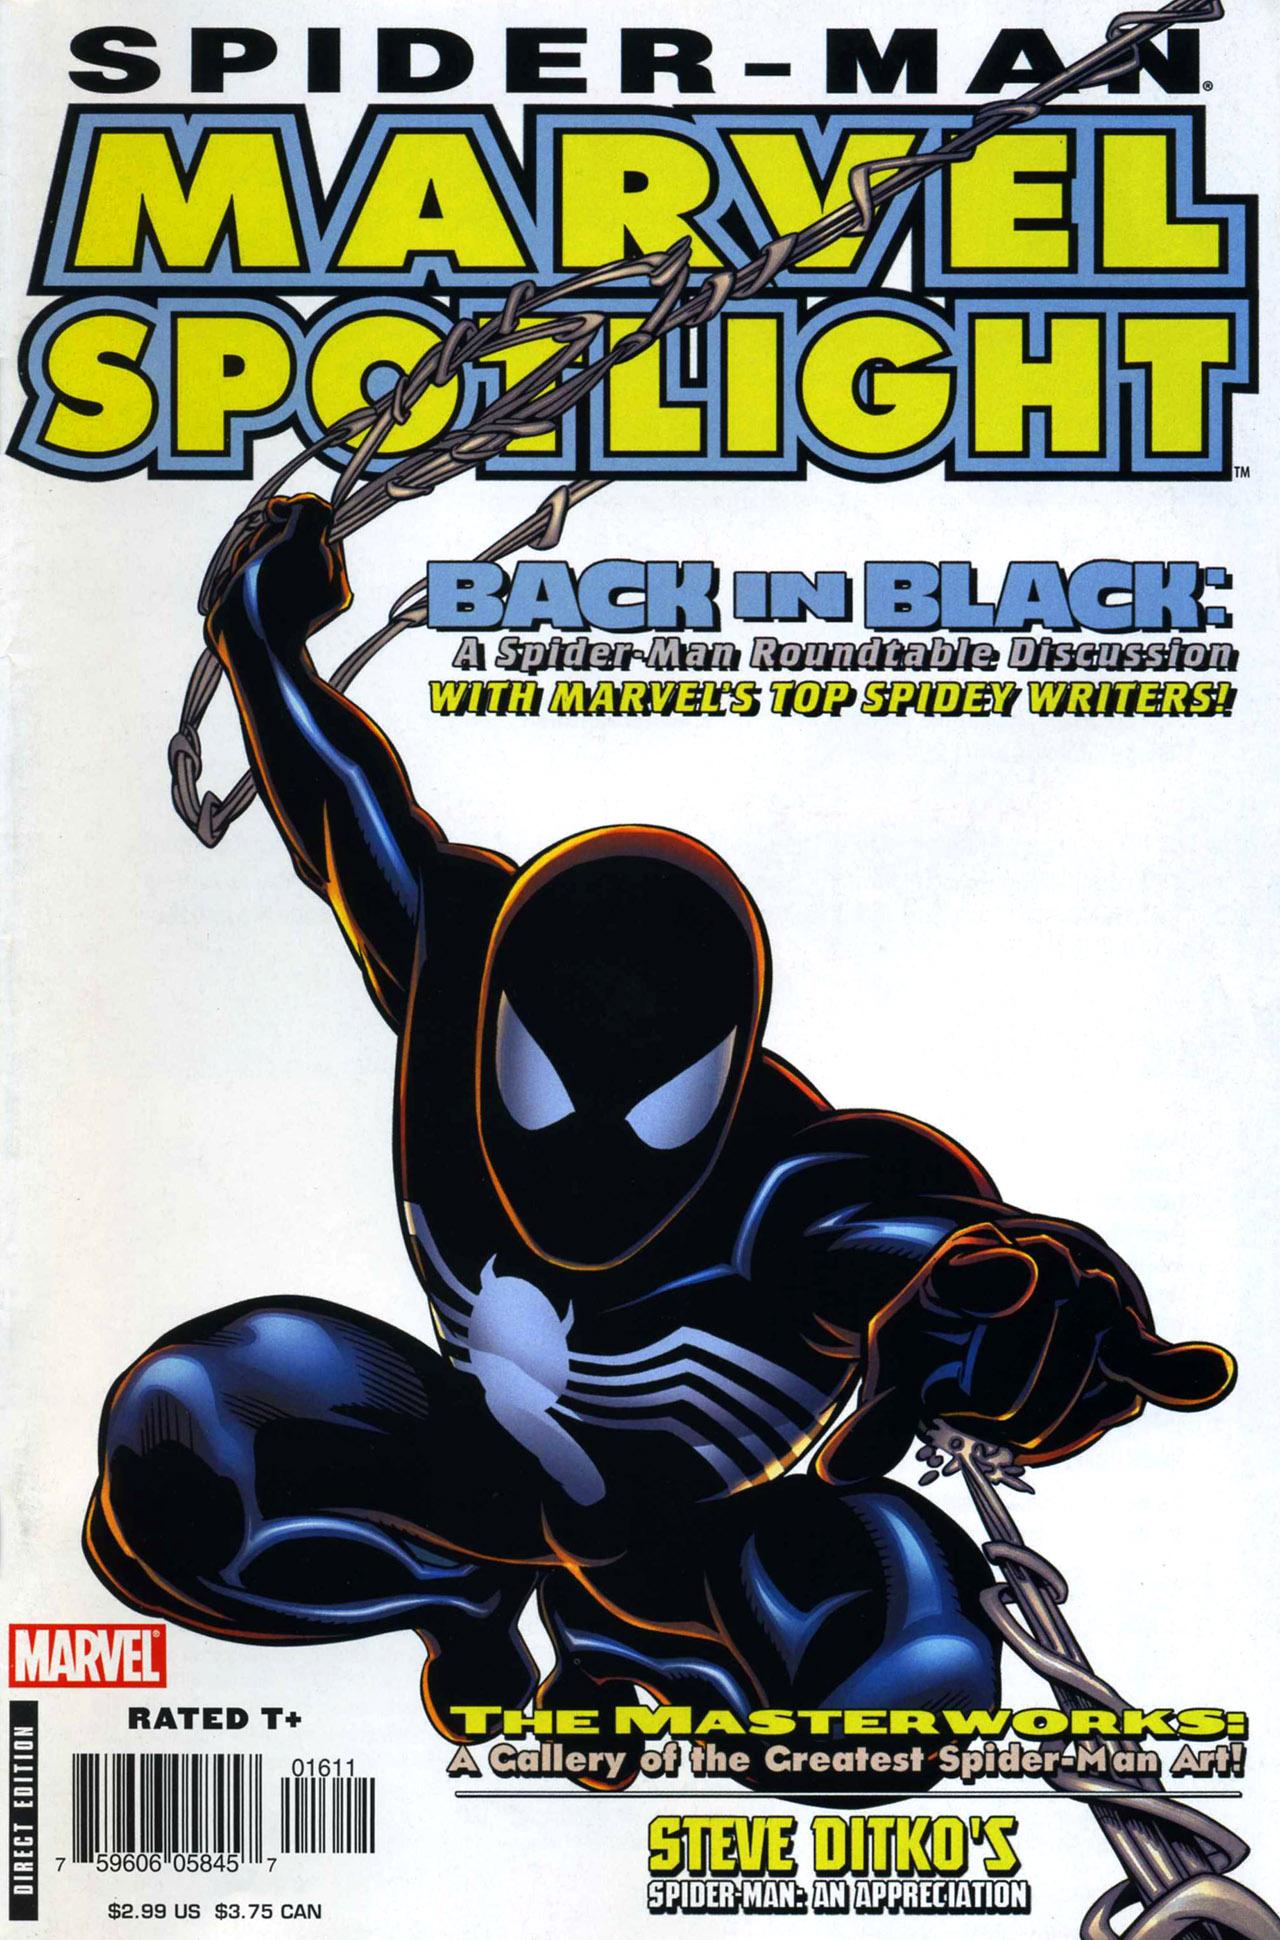 Marvel Spotlight Vol. 3 #16